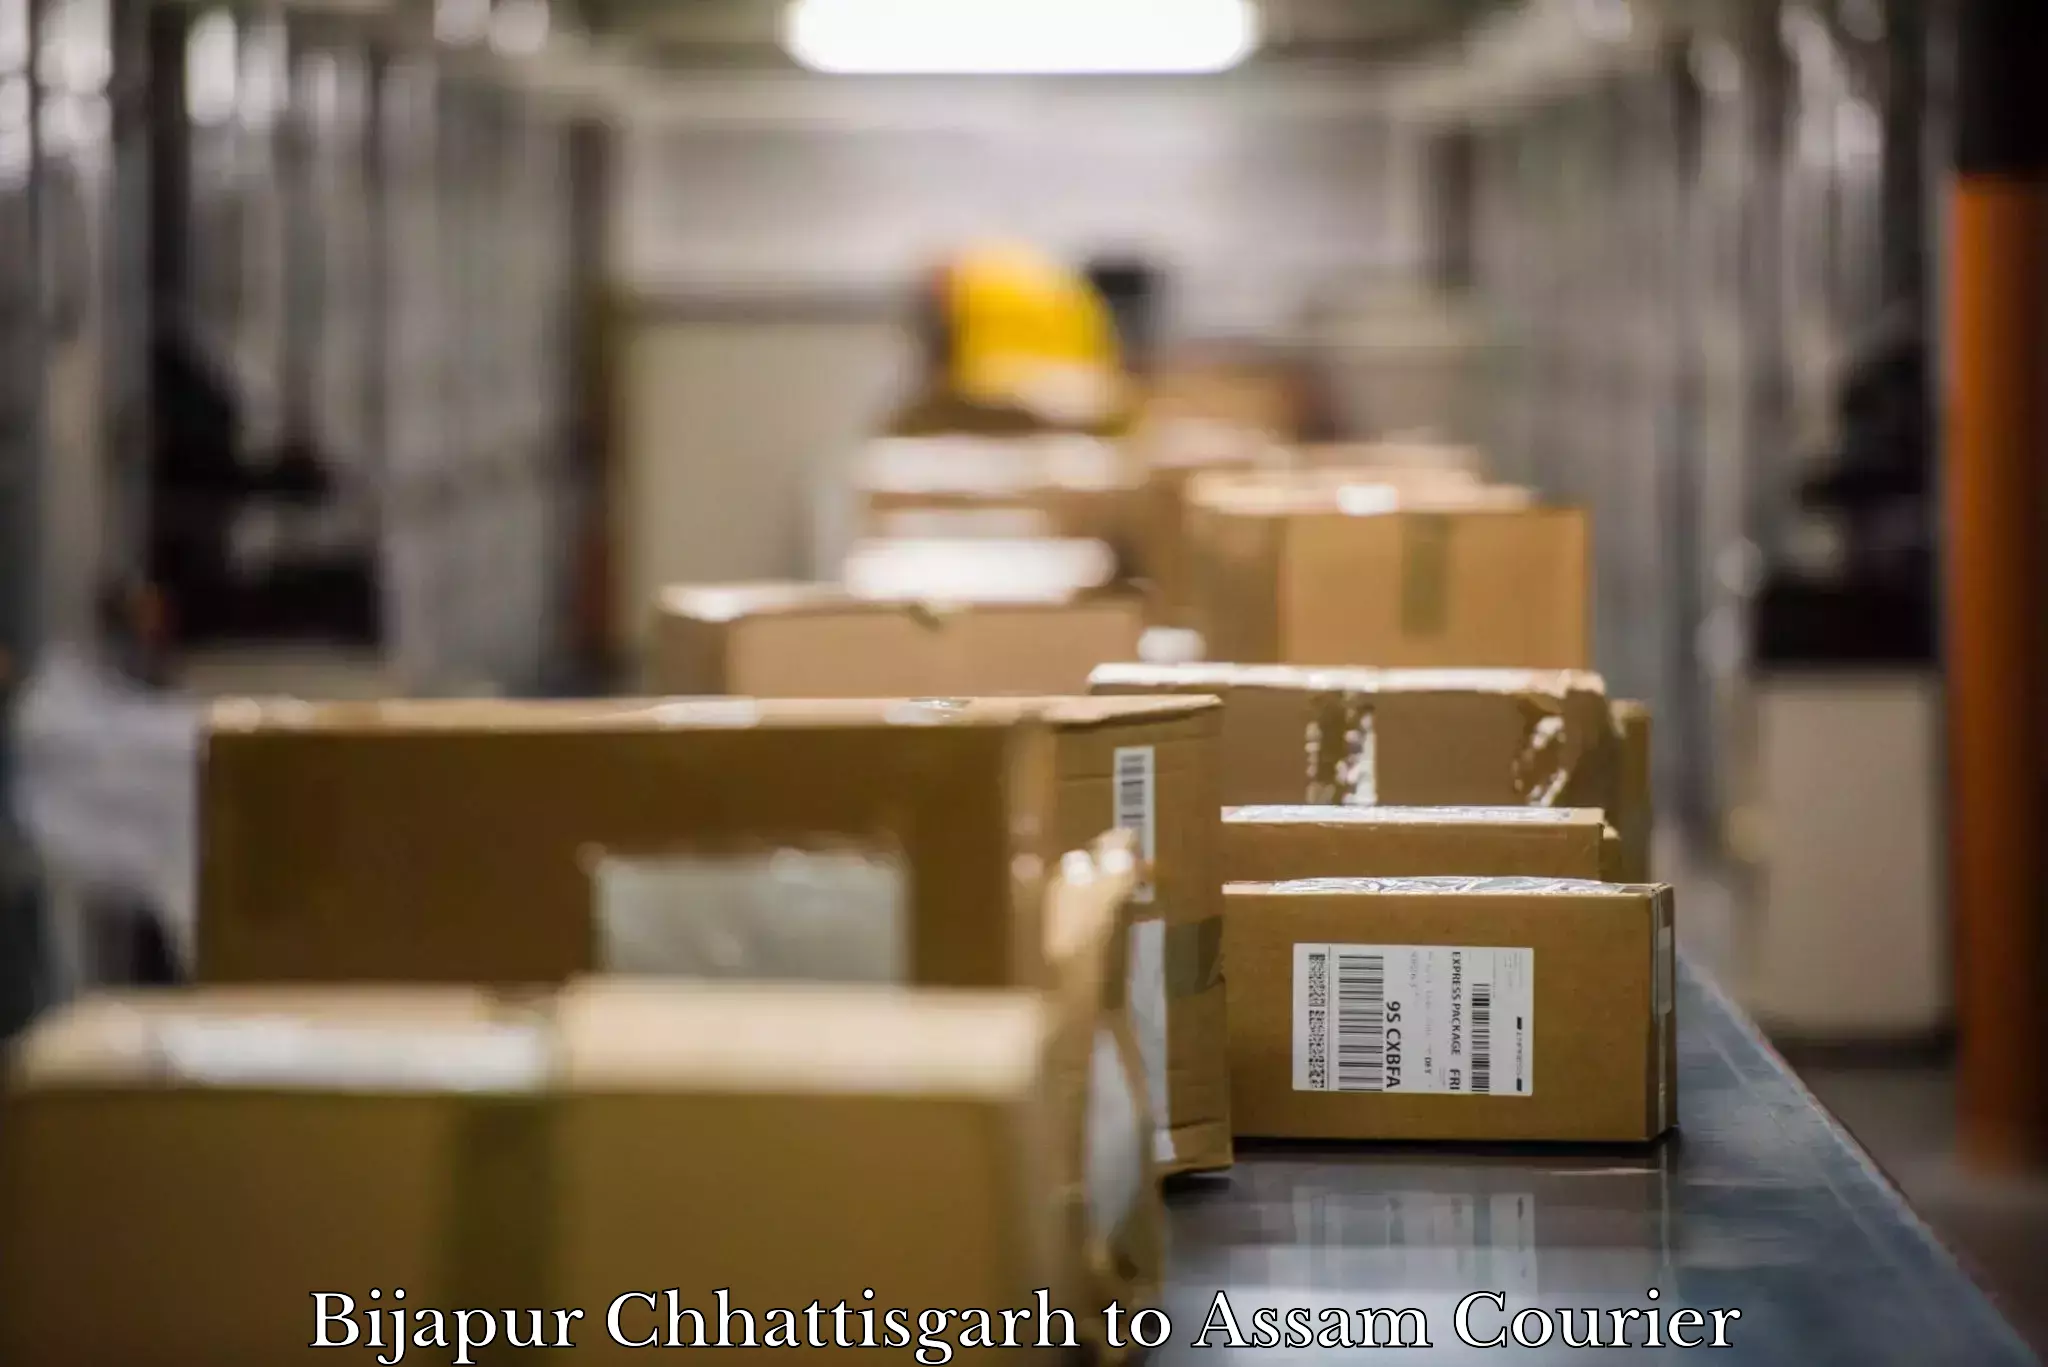 Moving and storage services in Bijapur Chhattisgarh to Dergaon